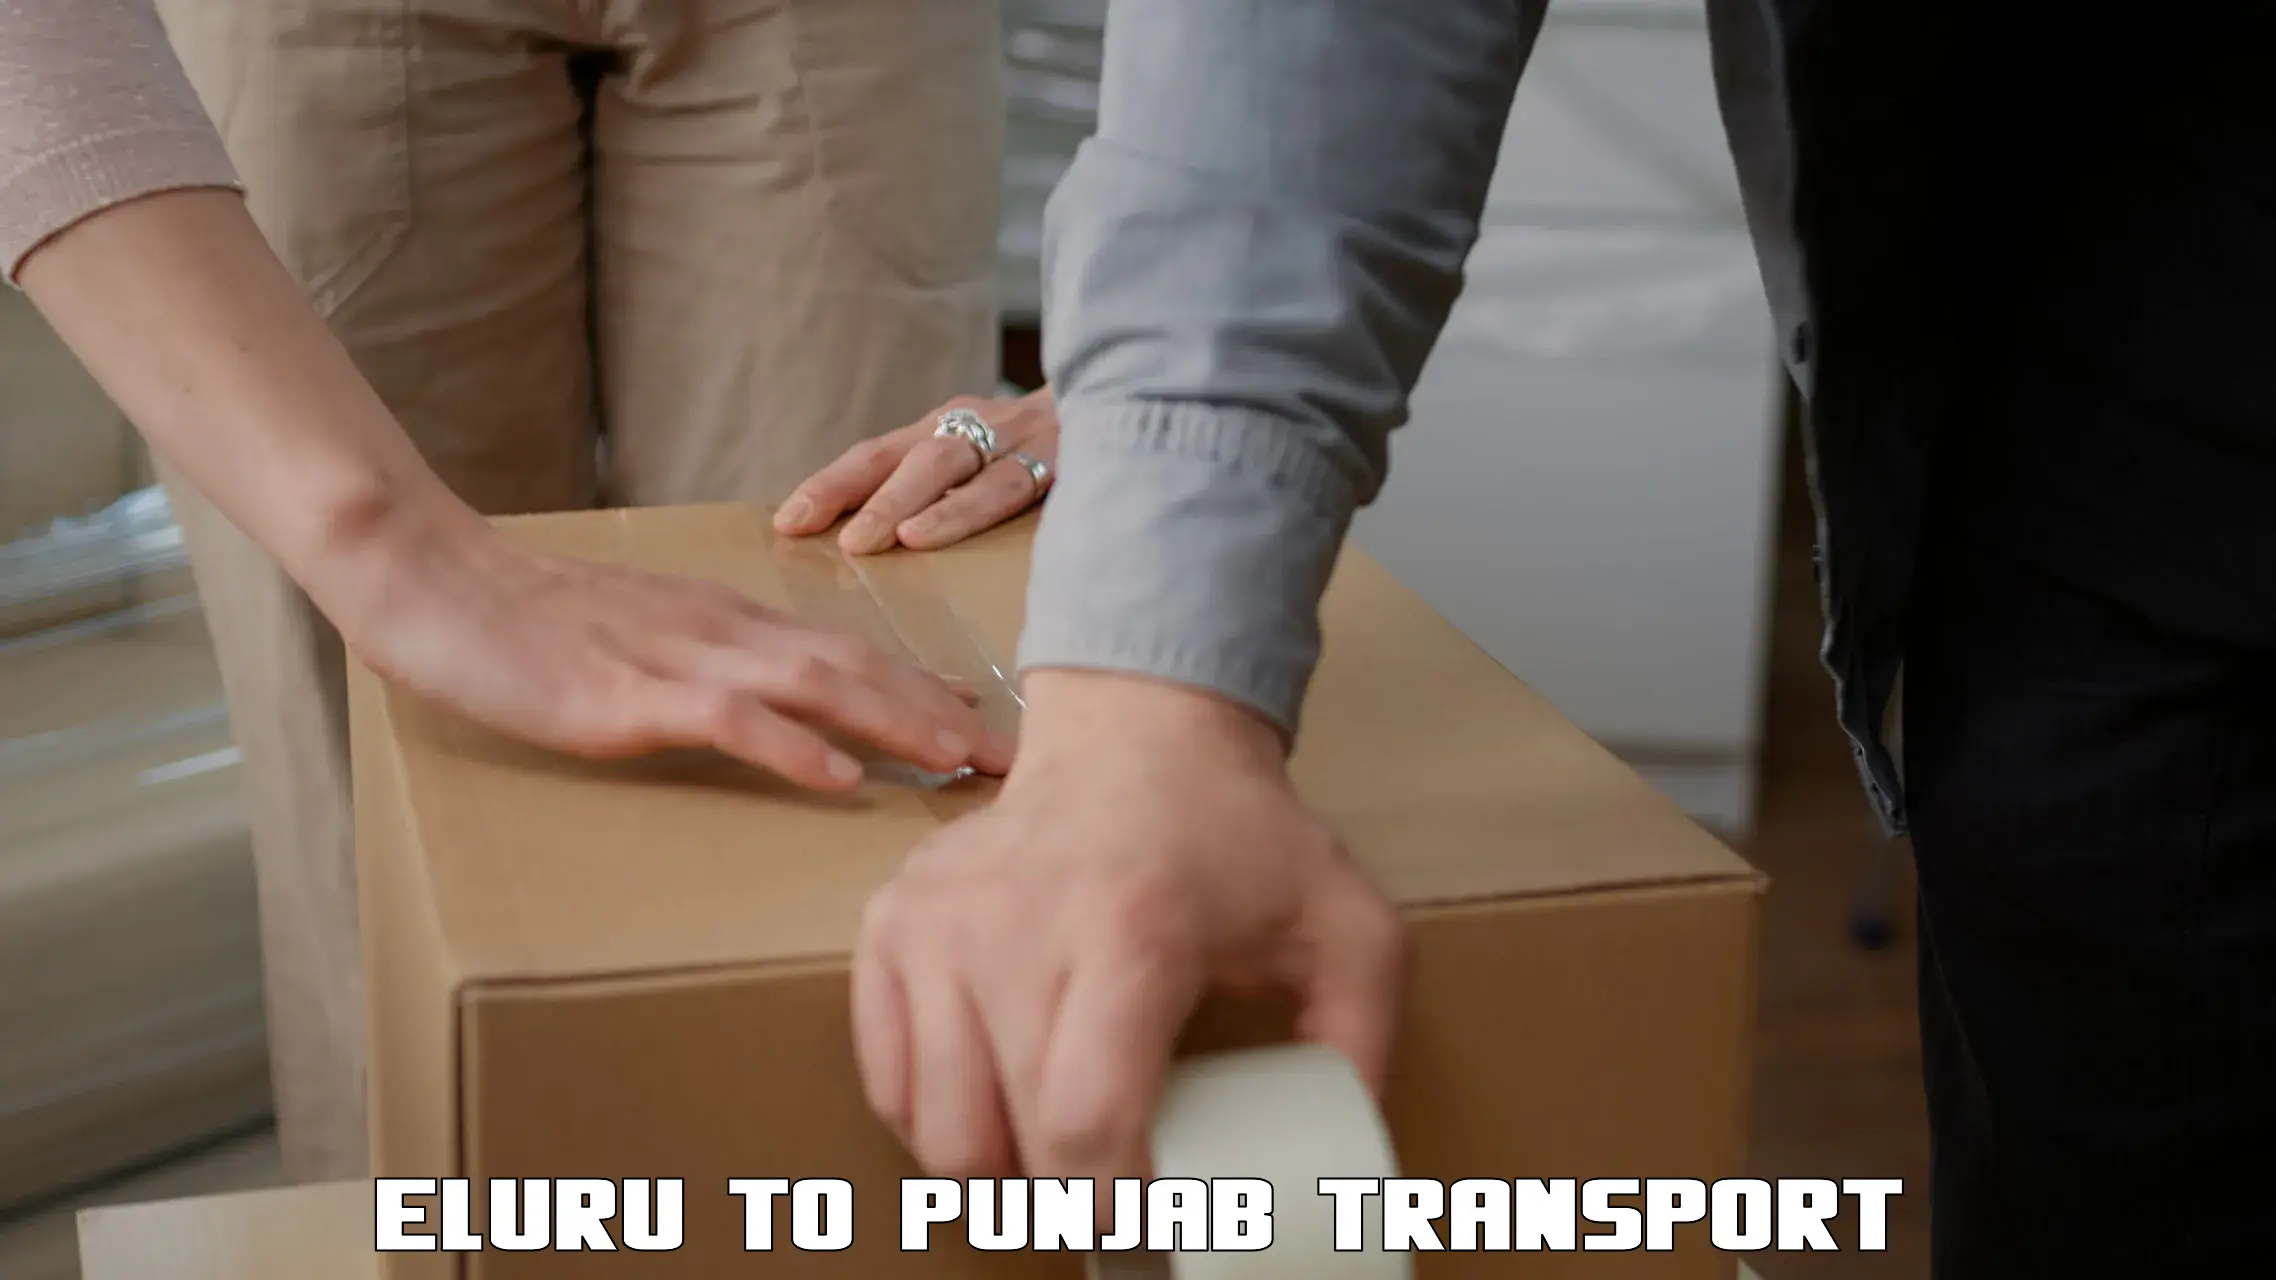 Shipping partner in Eluru to Punjab